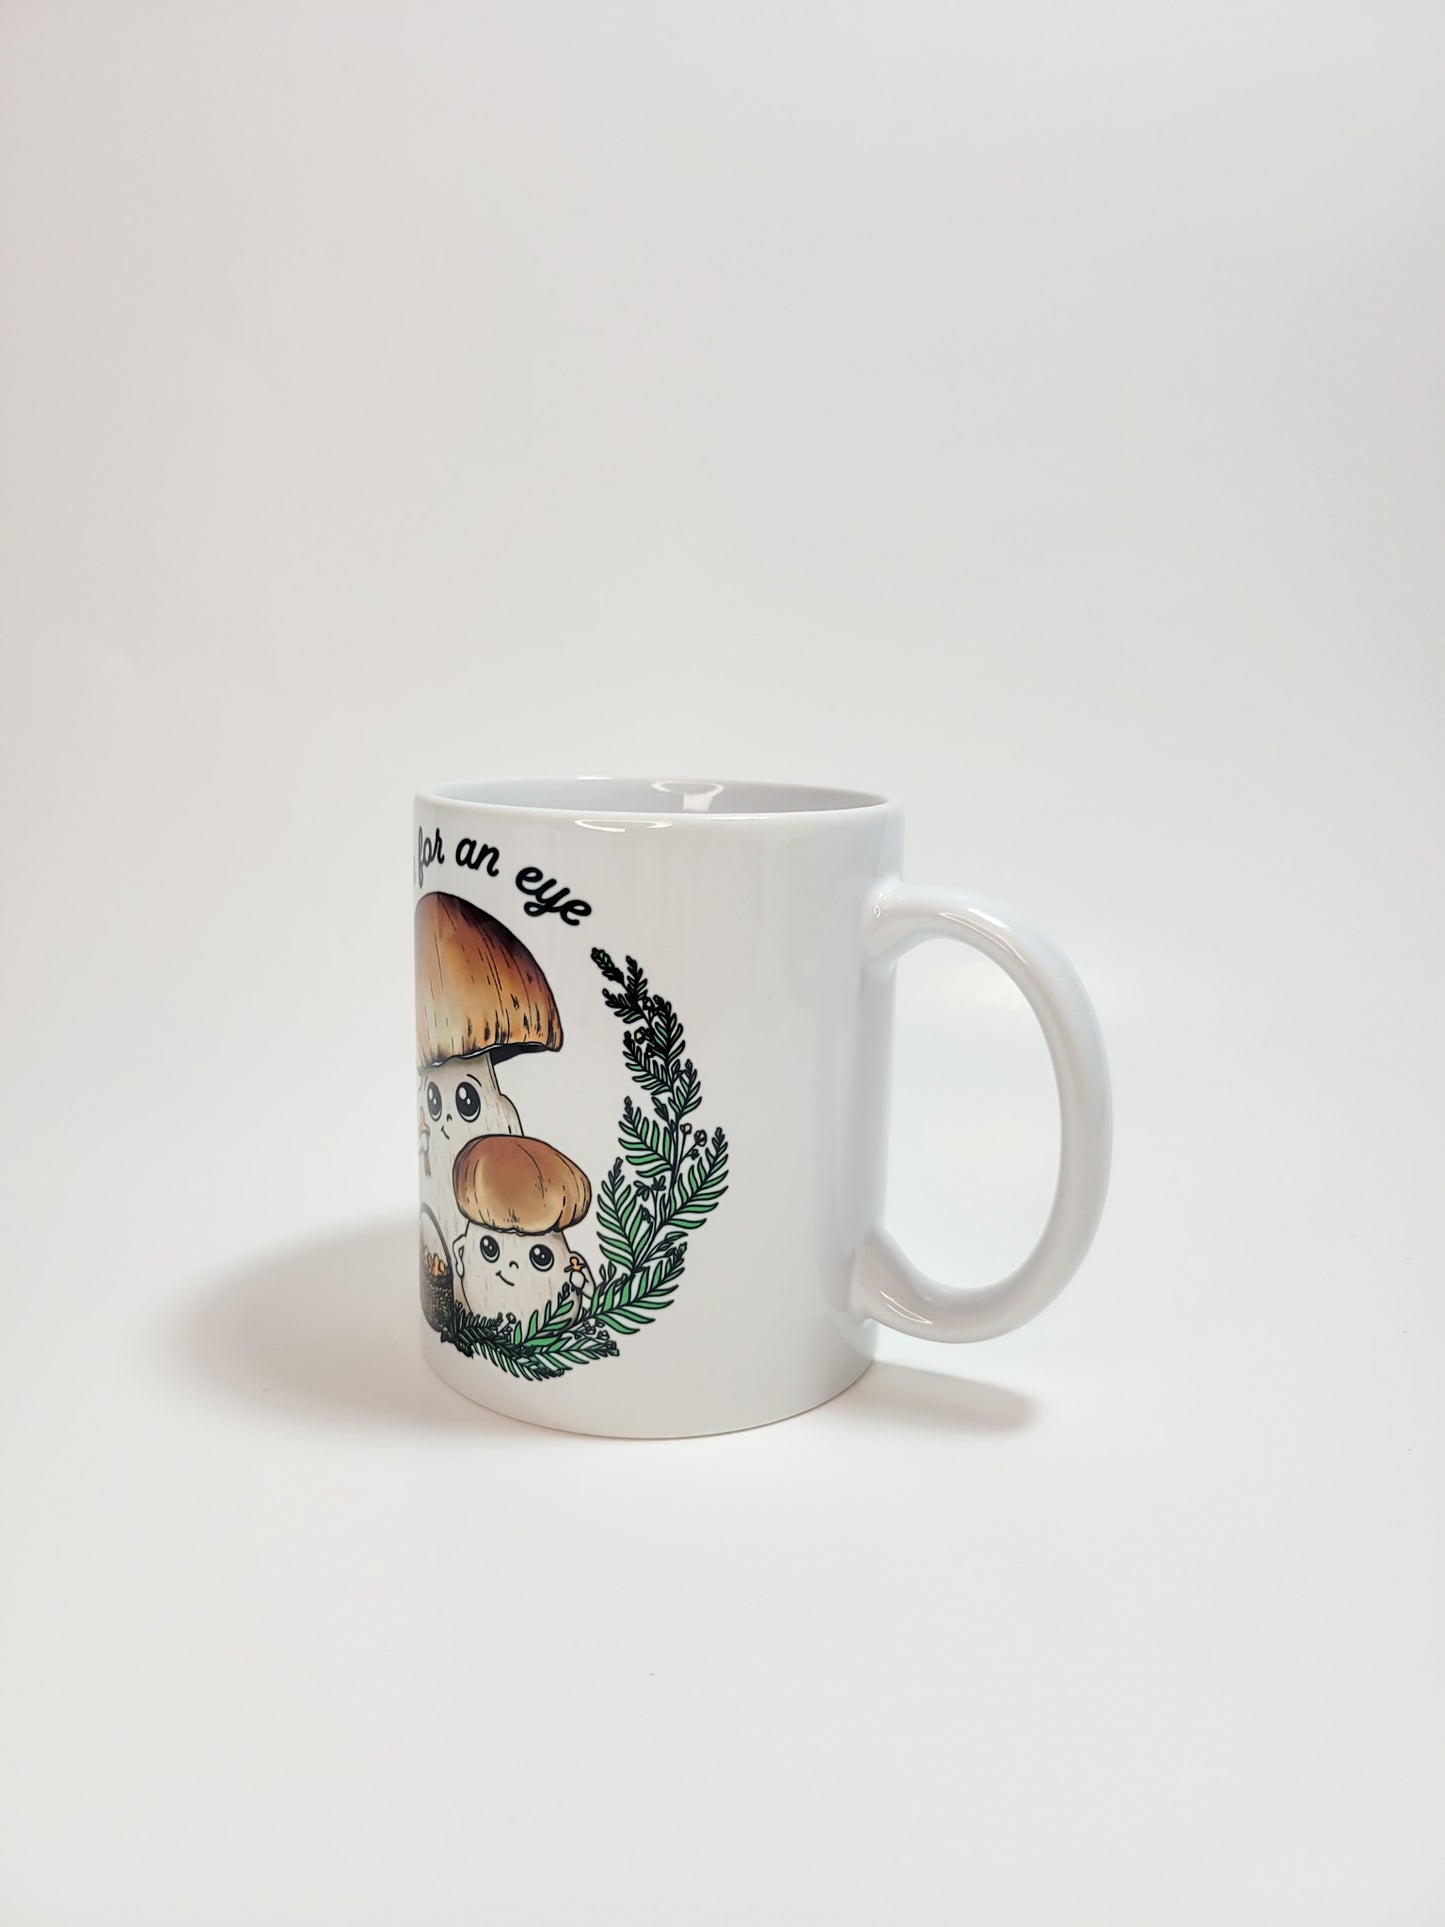 An Eye For An Eye | Funny Porcini Mushroom Mug | Mushroom Artwork on Ceramic Cup | 11oz/15oz Sizes